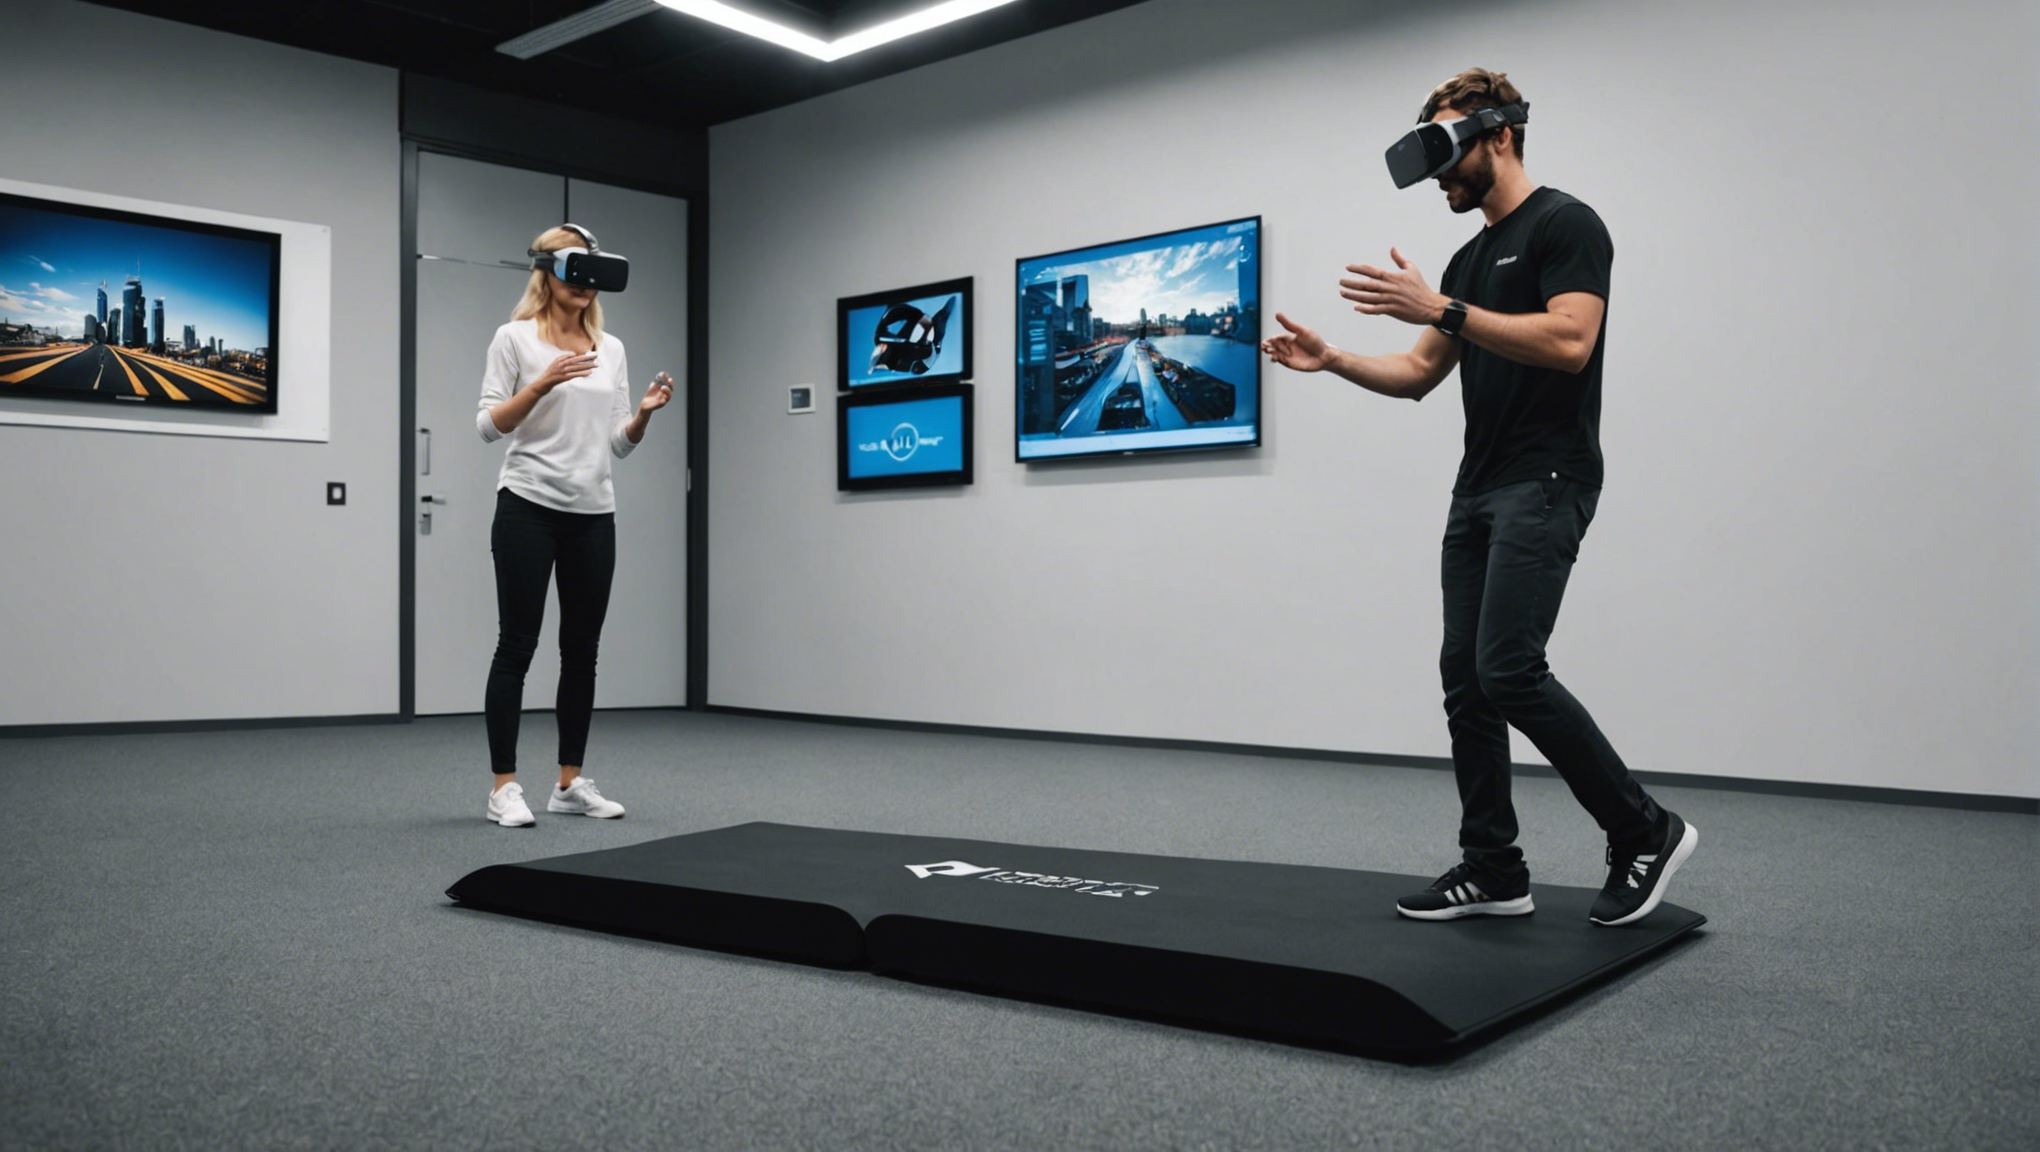 découvrez si marcher en réalité virtuelle est possible avec un tapis de marche. apprenez comment combiner réalité virtuelle et exercice physique pour une expérience immersive unique.